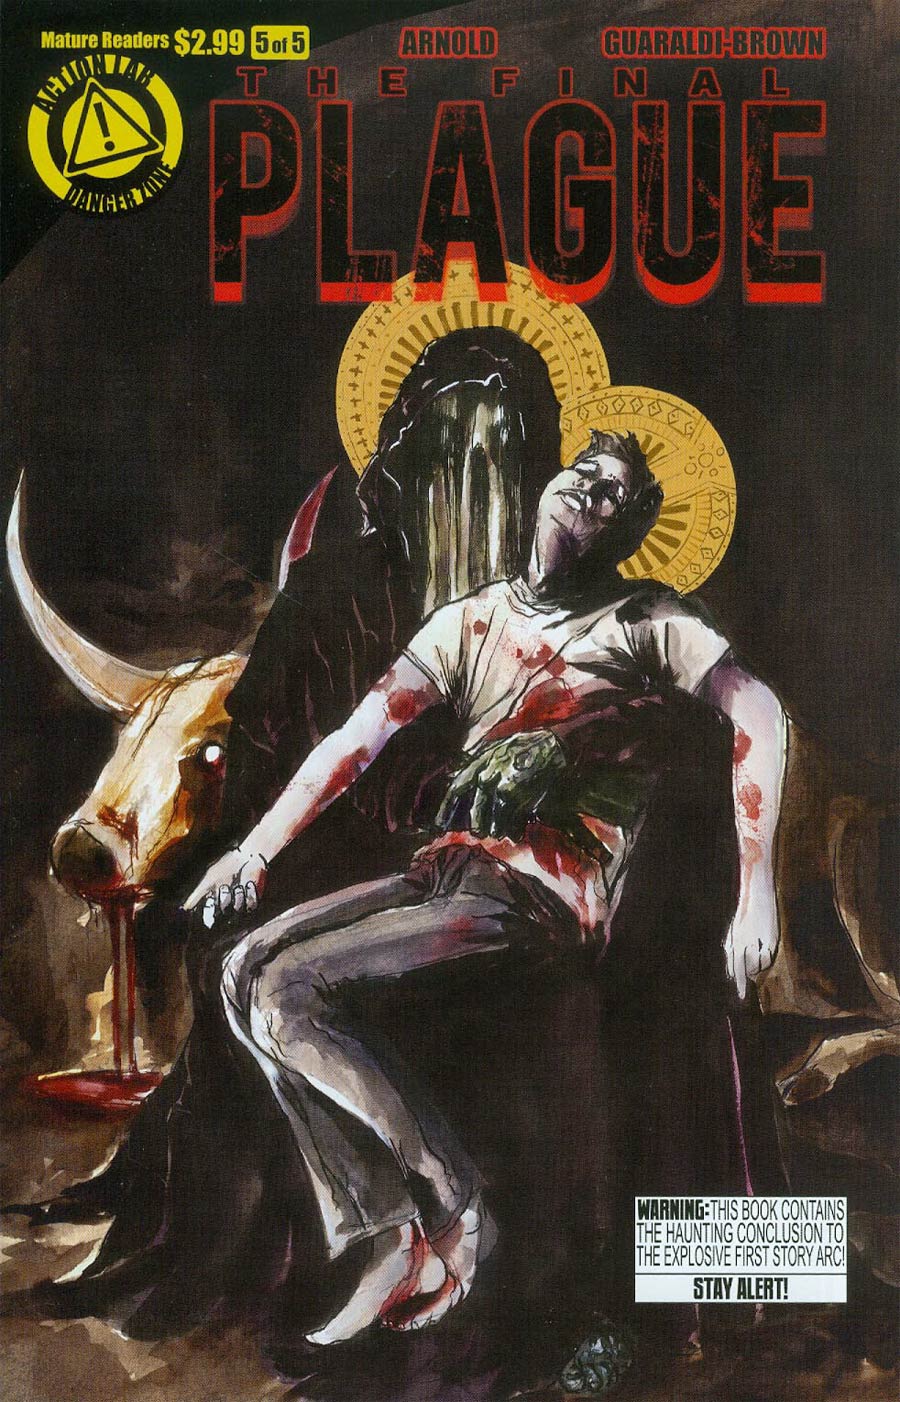 Final Plague #5 Cover A Tony Guaraldi-Brown